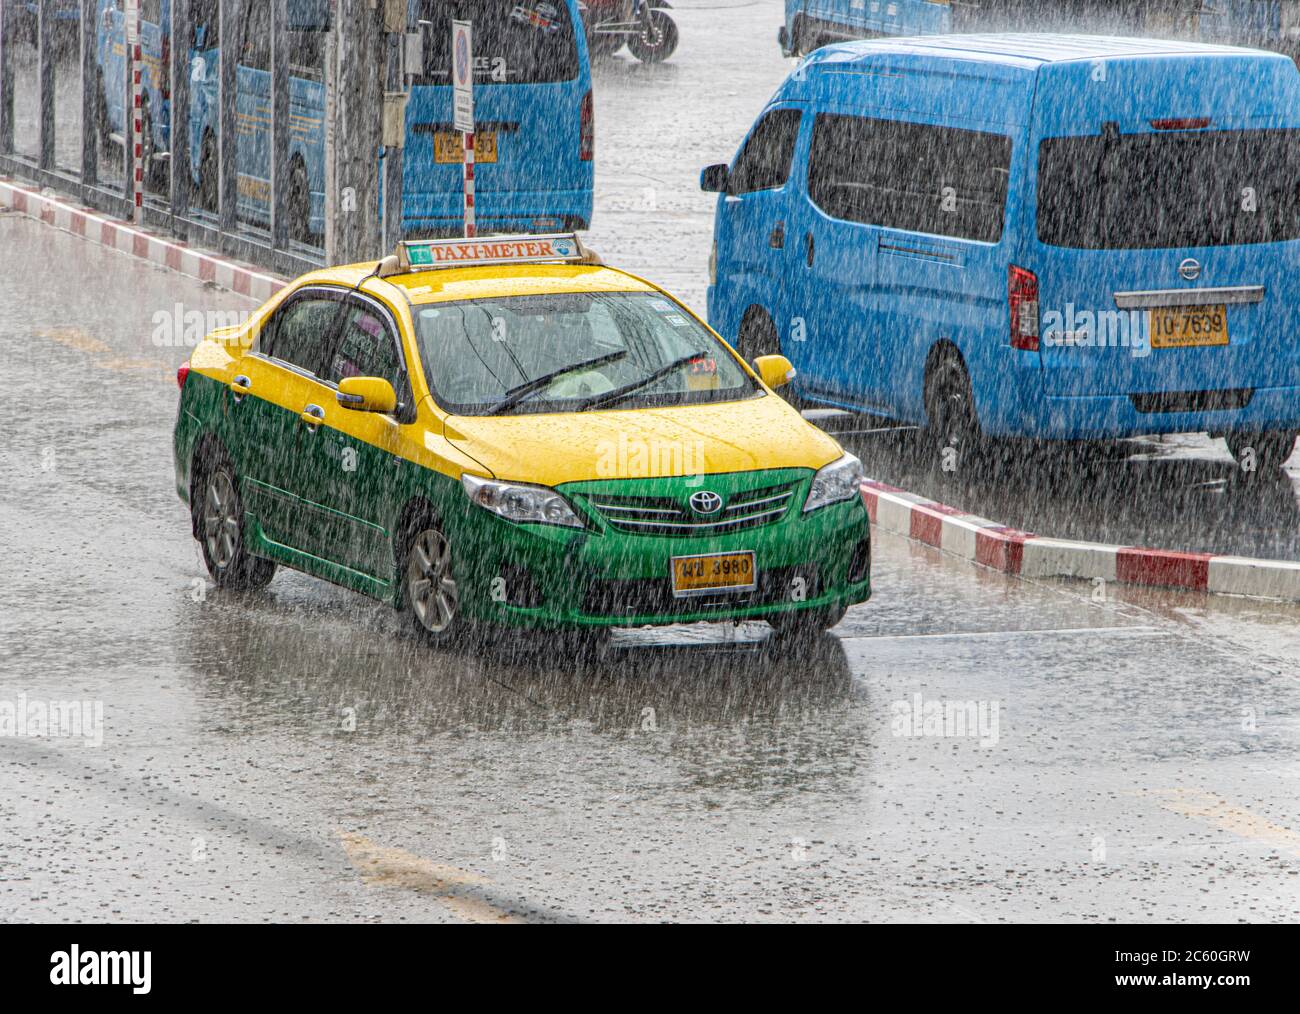 SAMUT PRAKAN, THAILANDIA, 15 2020 GIUGNO, un giro in taxi sulla strada bagnata durante una pioggia pesante. Foto Stock